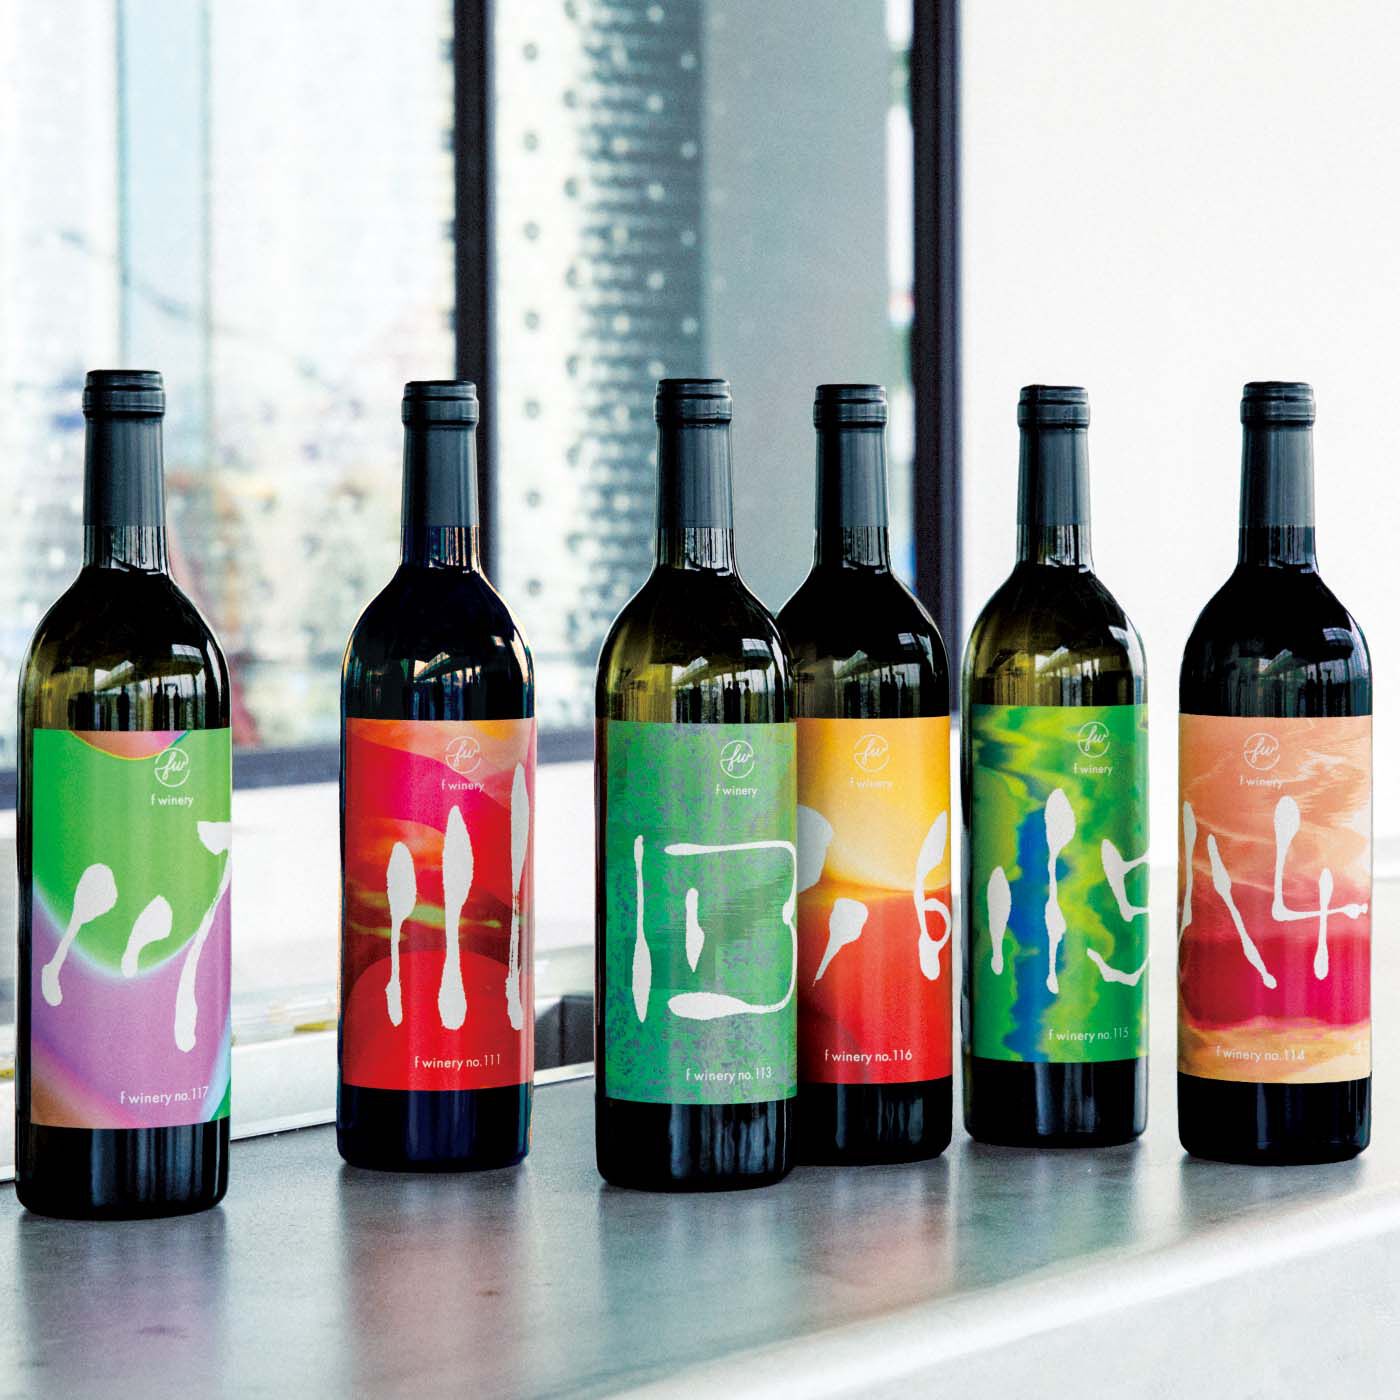 フェリシモコレクション|フェリシモワイン醸造所 ぜいたくな時間を楽しむワインの会（6回予約）|f winery厳選のワインを6回にわたってお届けします。